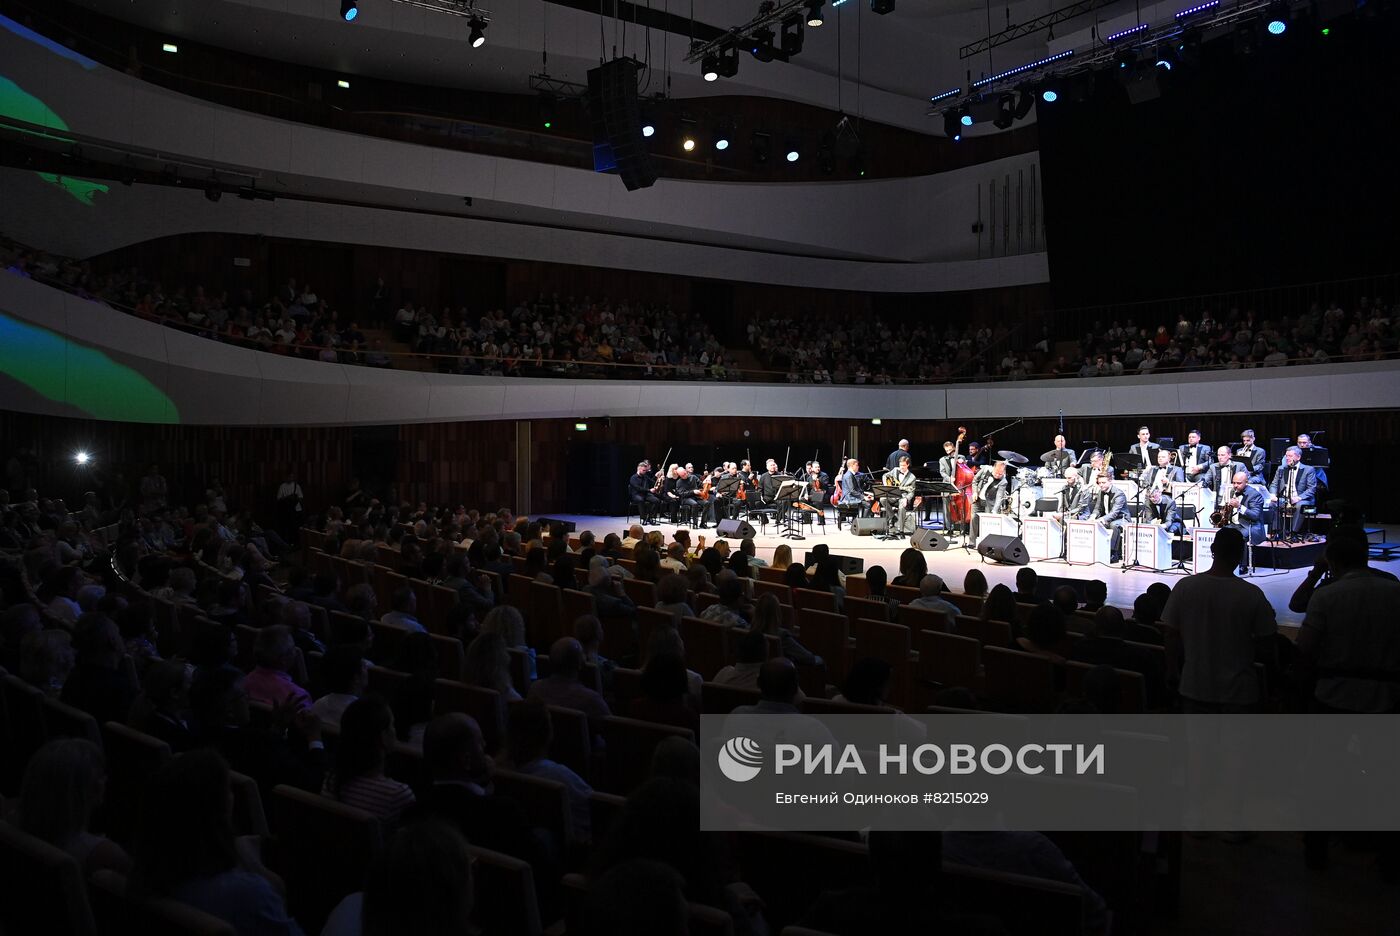 Открытие Московского международного джазового фестиваля